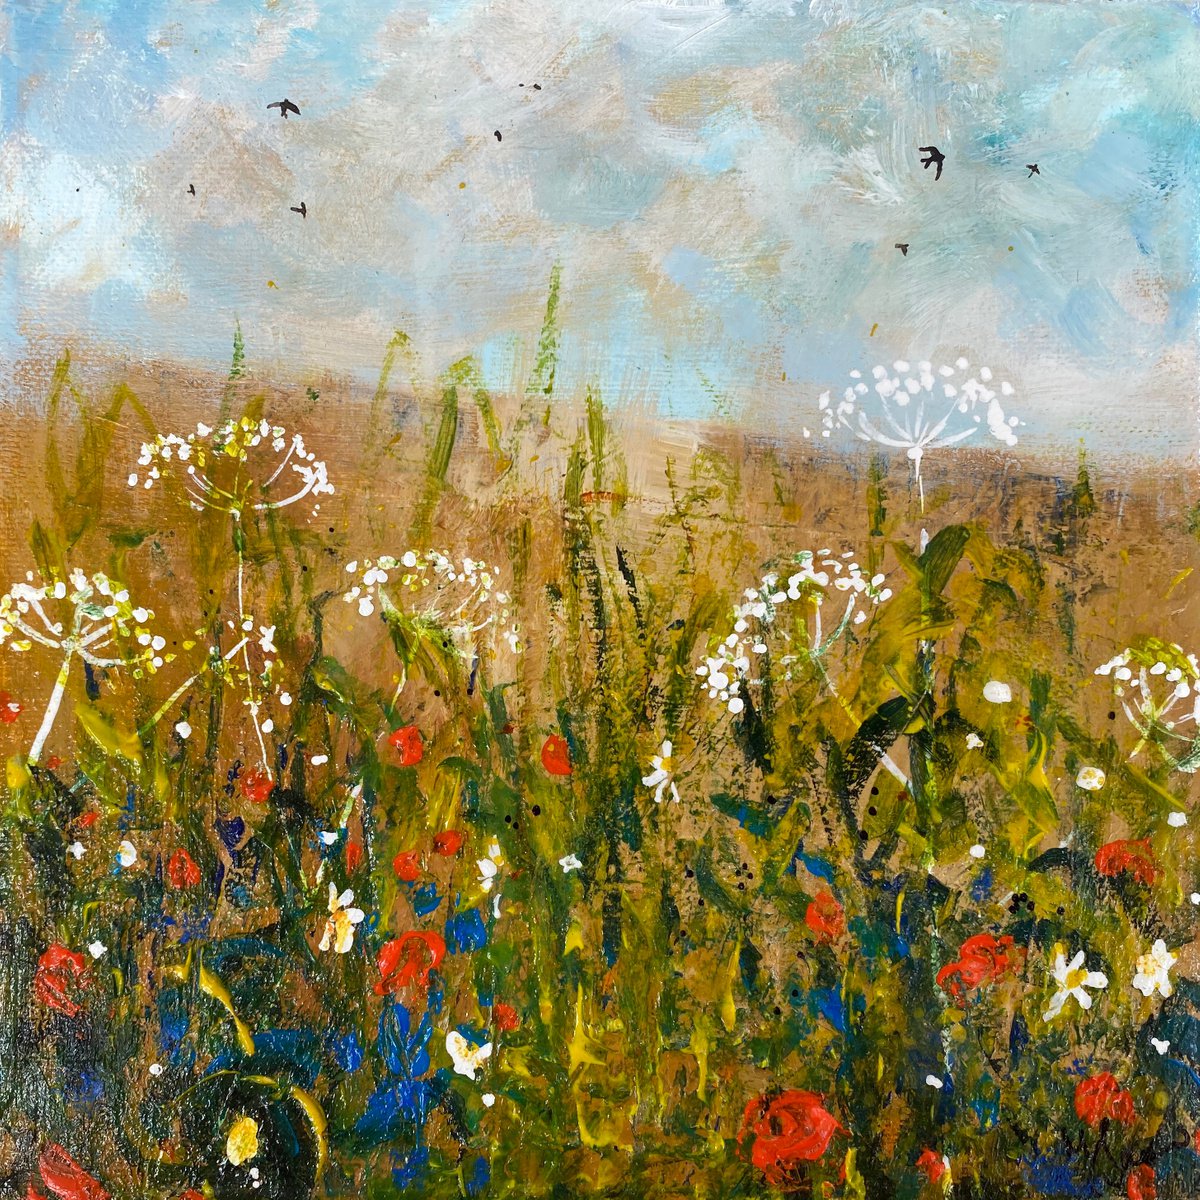 Seasons - Summer Wildflowers & Swallows by Teresa Tanner